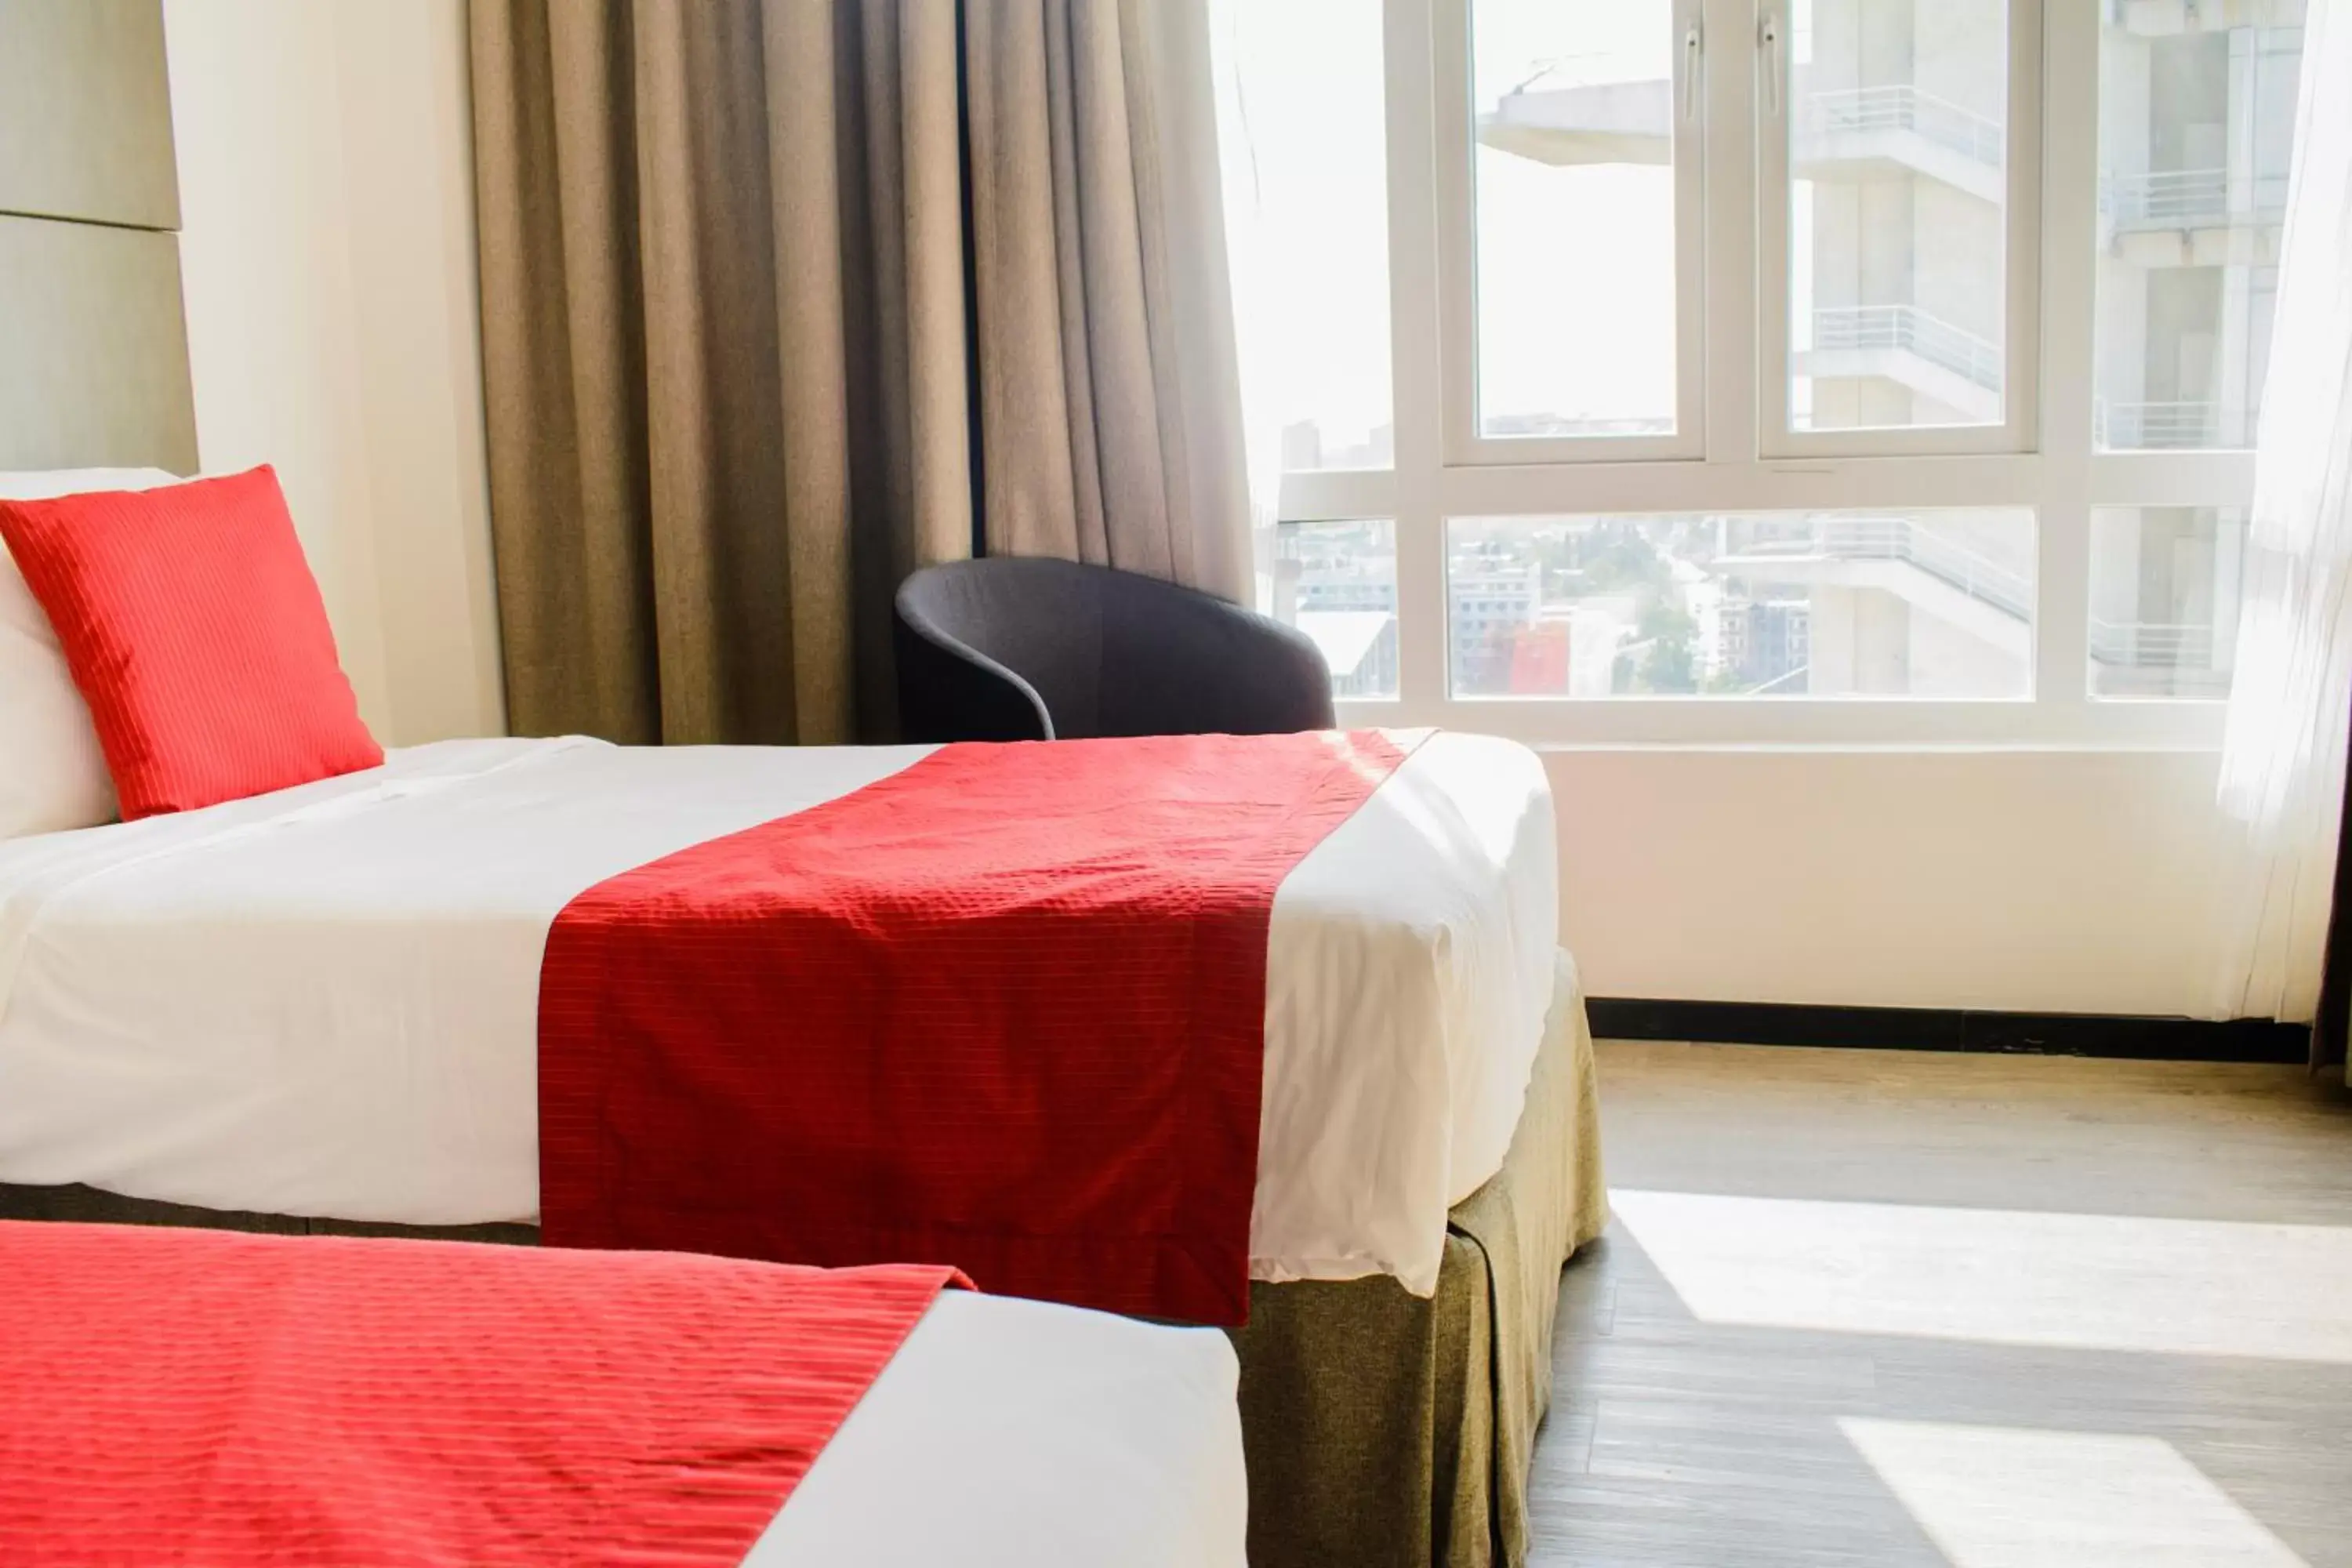 Nearby landmark, Bed in Onomo Hotel Dar es Salaam